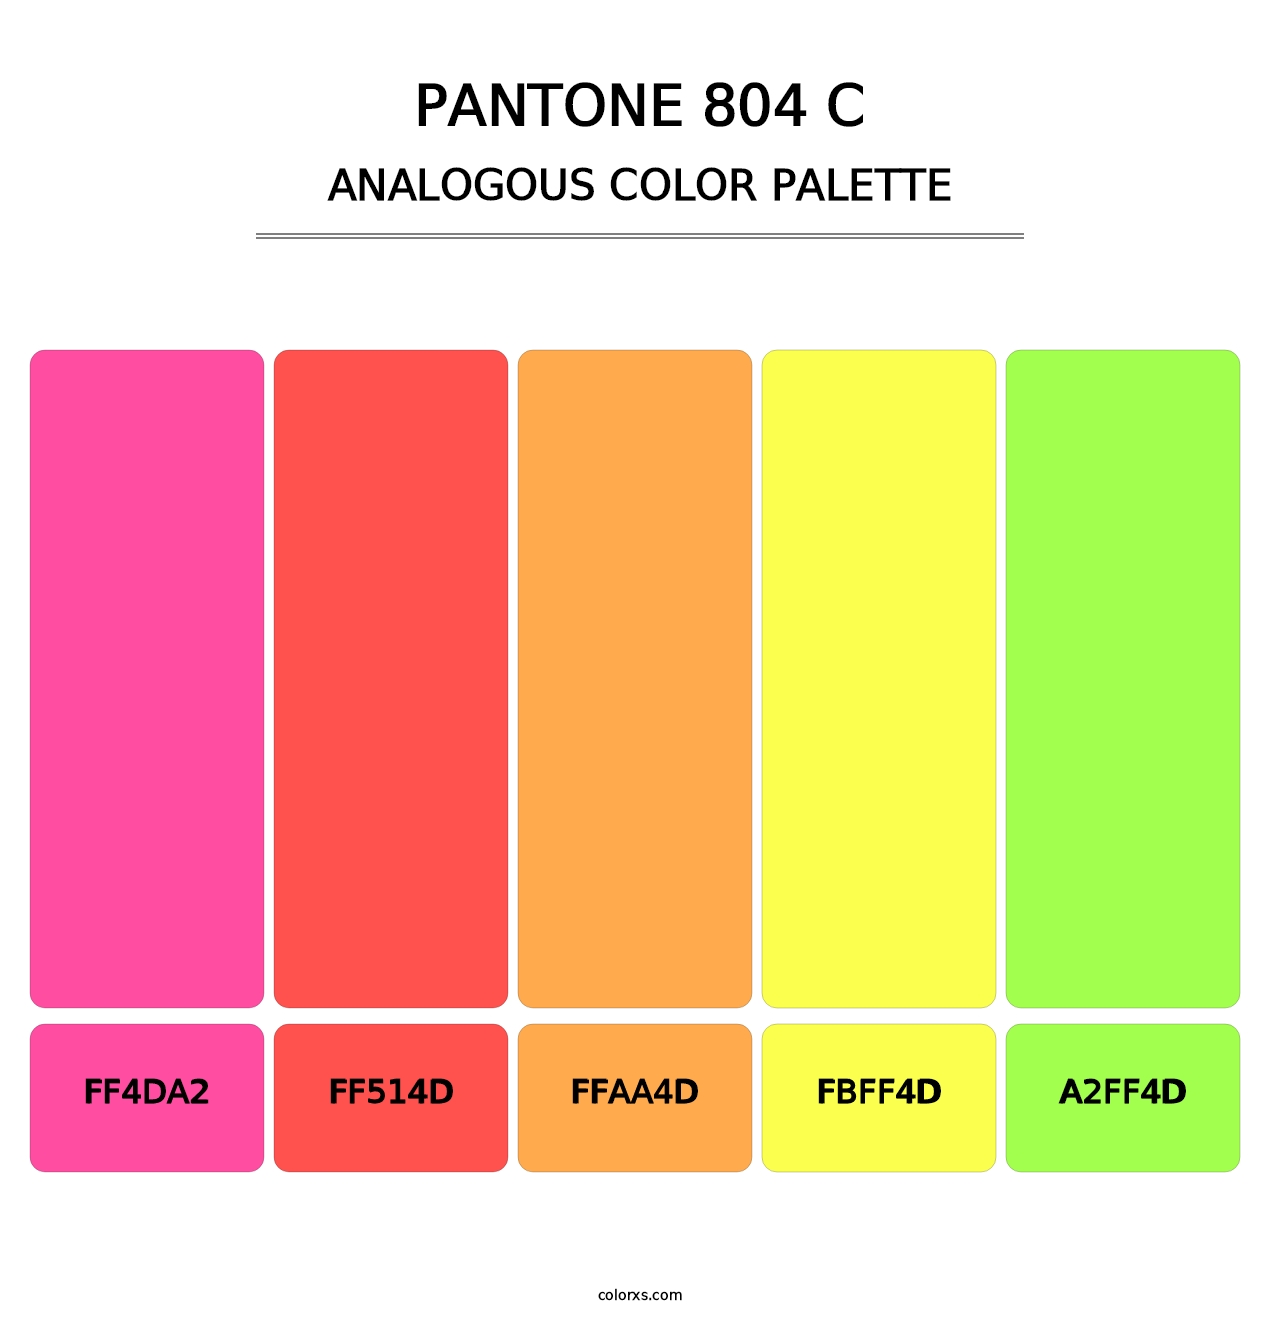 PANTONE 804 C - Analogous Color Palette